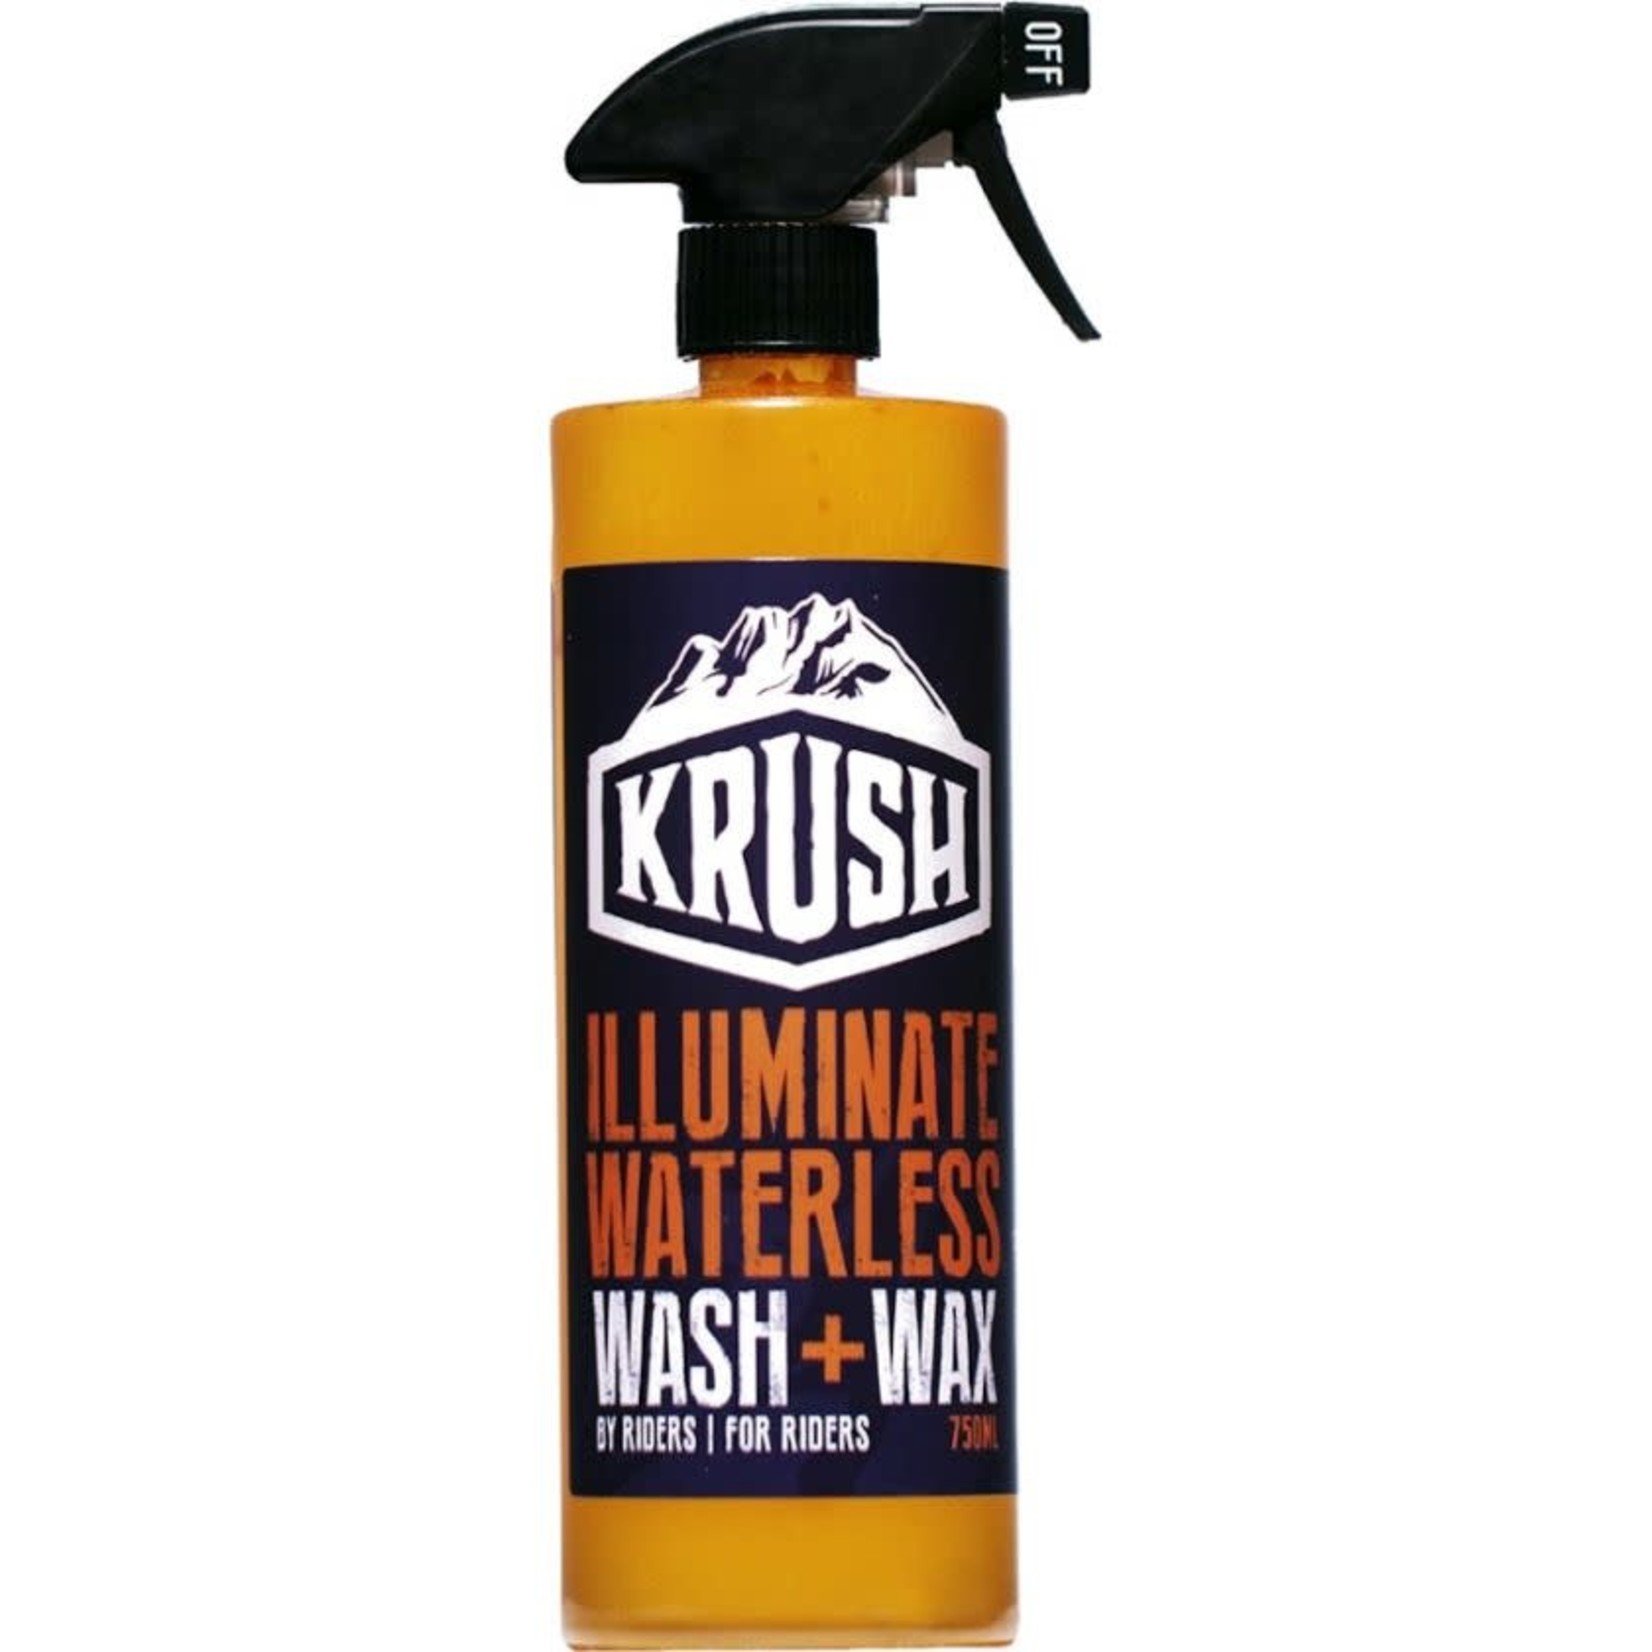 Krush Illuminate Waterless Wash + Wax